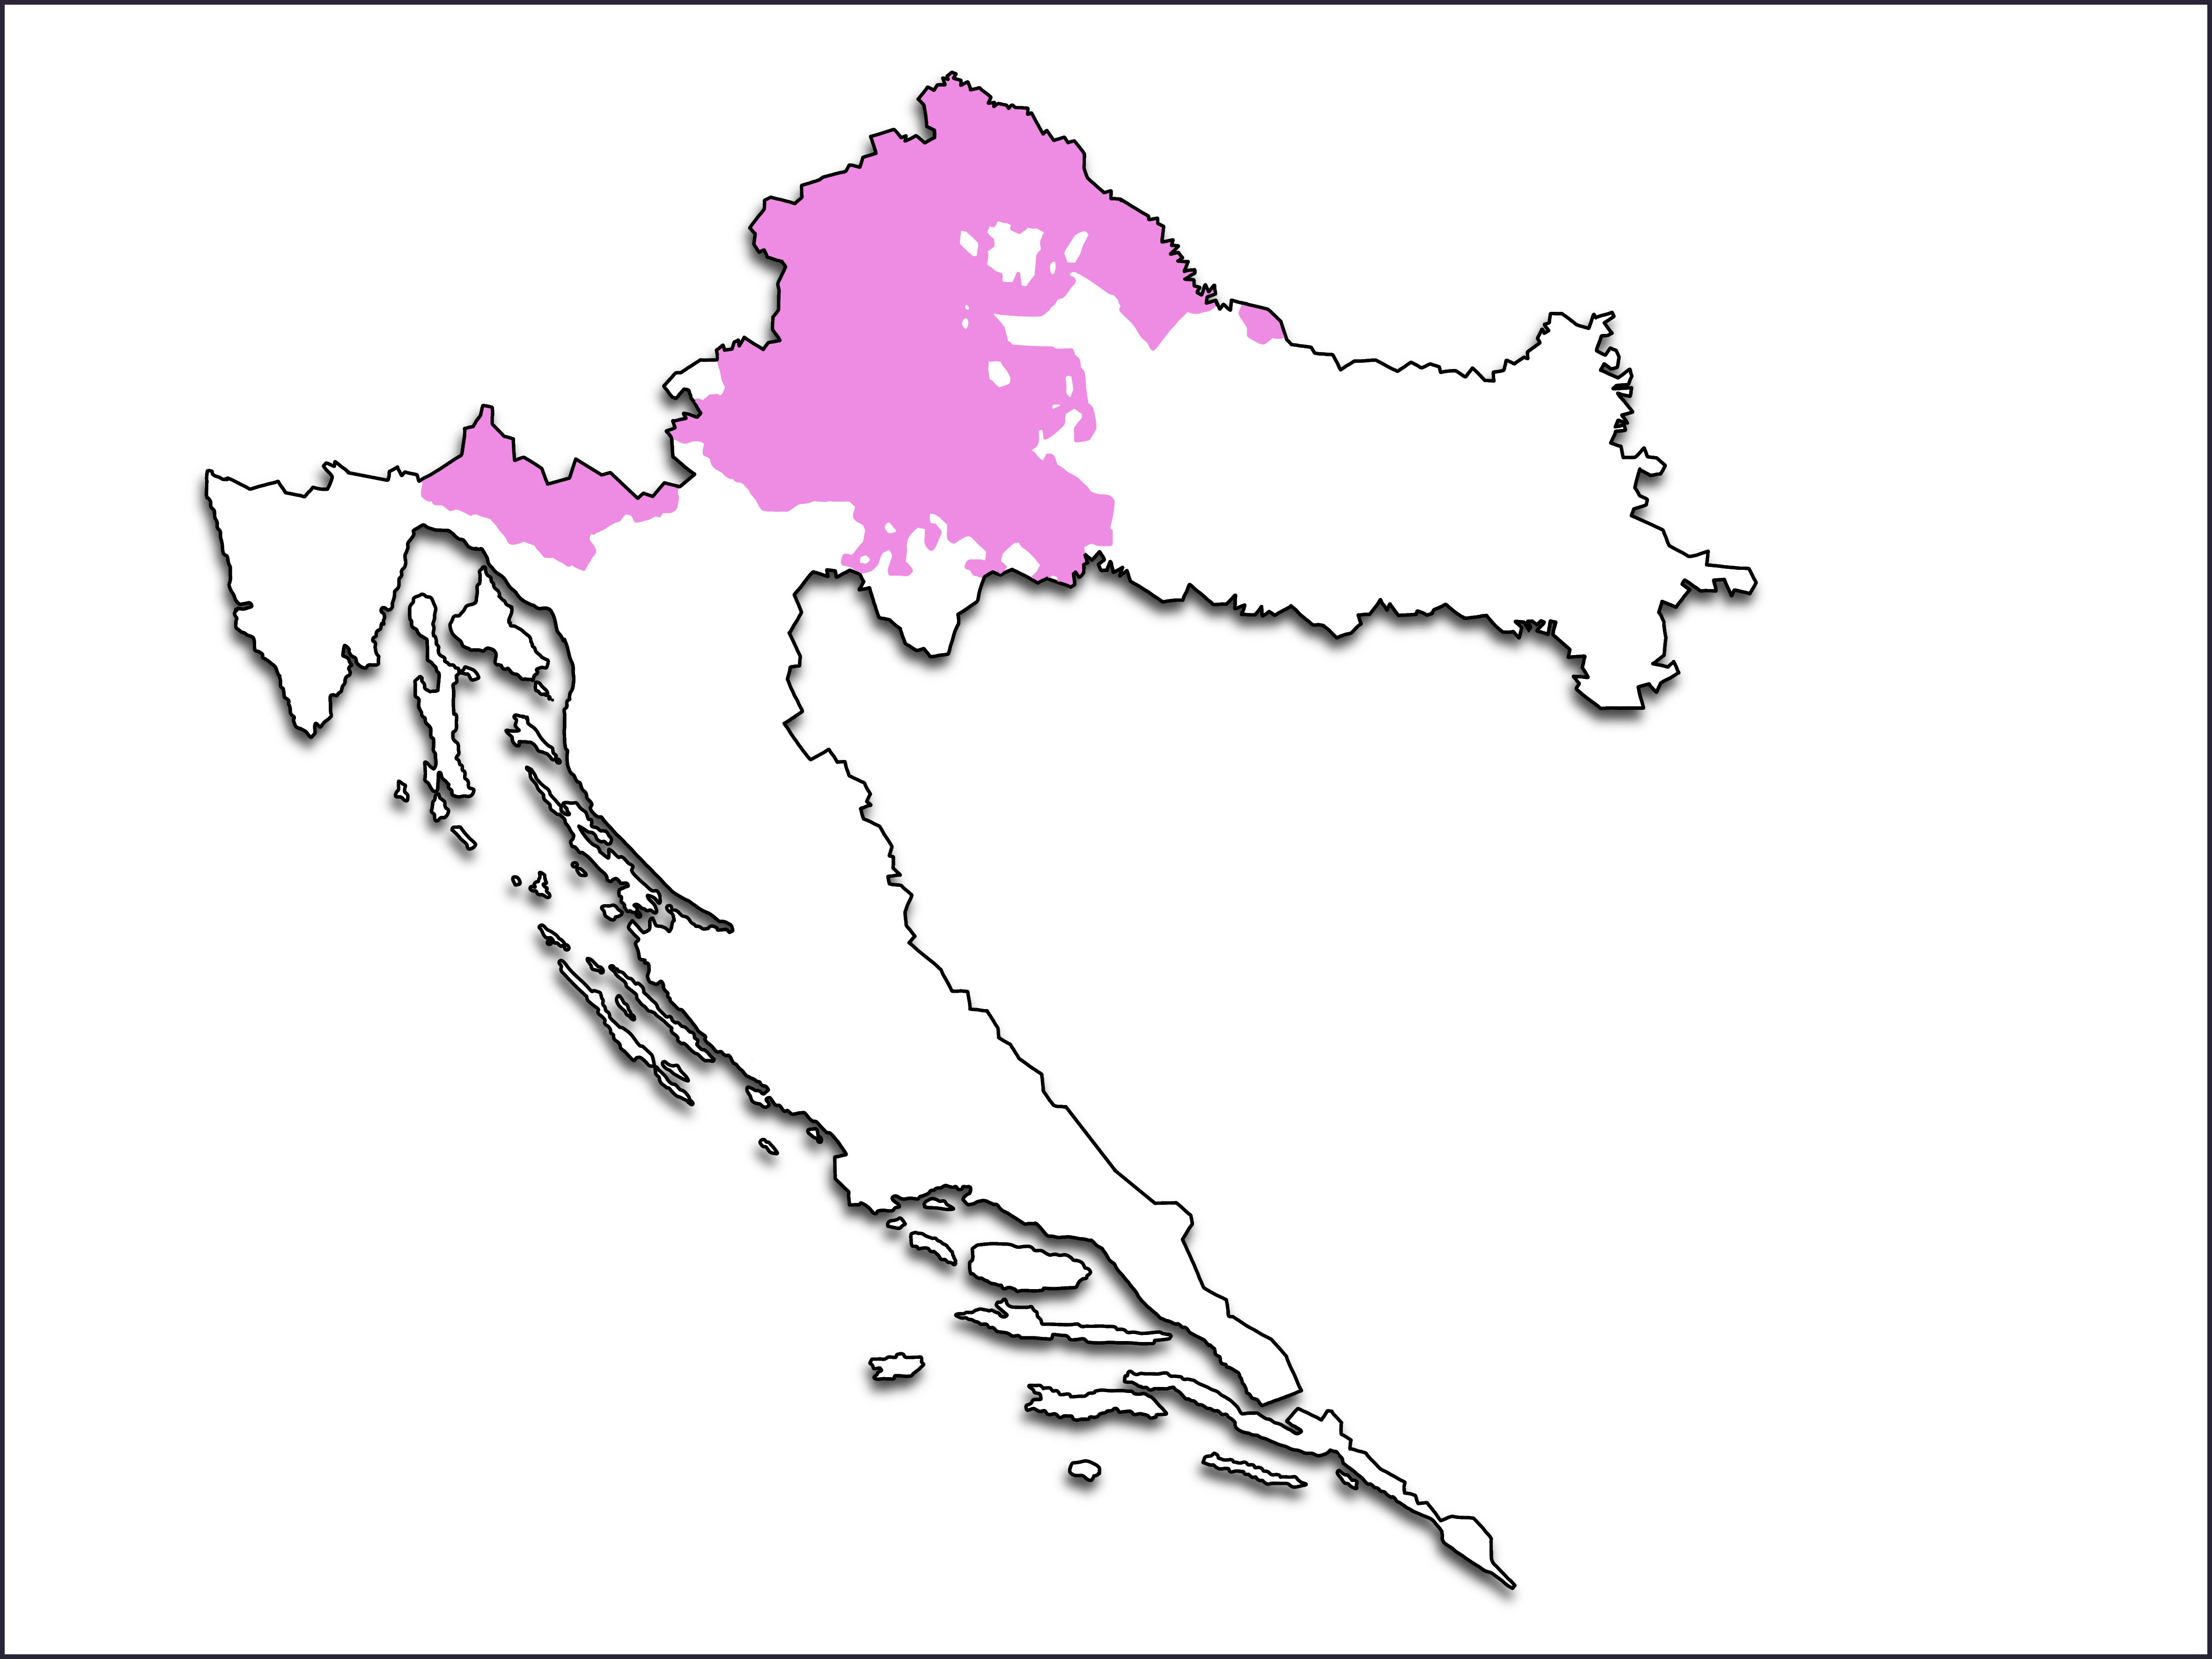 Karta Hrvatske na kojoj su ljubičastom bojom označena područja s kajkavskim narječjem: sjeverozapadna Hrvatska, zapadna Podravina, Međimurje, Hrvatsko zagorje, Prigorje, Posavina, Turopolje, Pokuplje, Gorski kotar i dio sjeverne Istre.